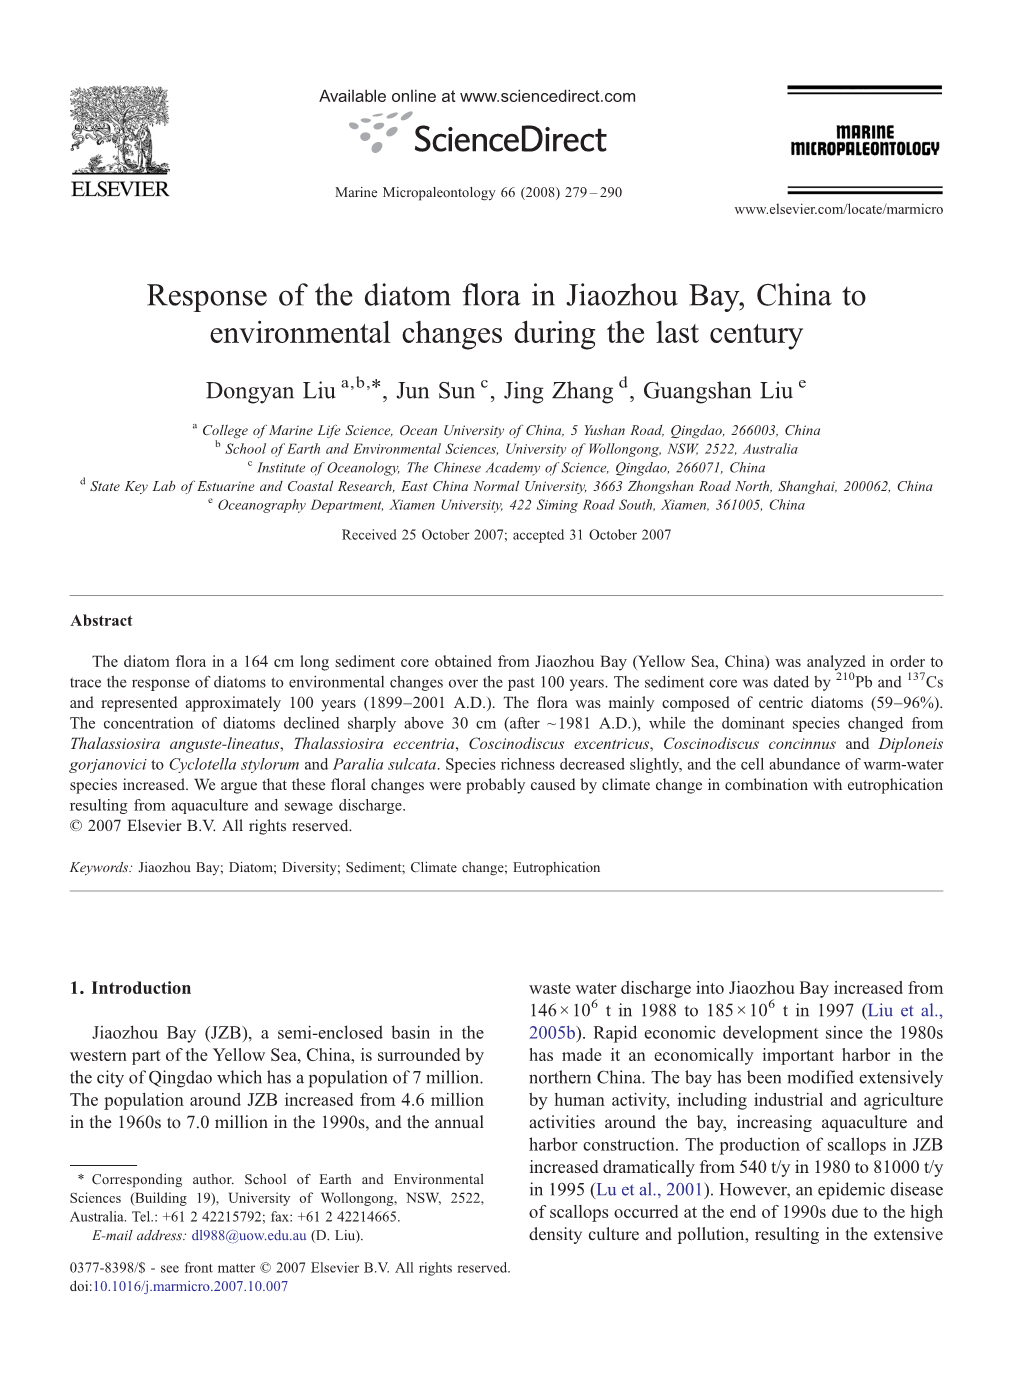 Response of the Diatom Flora in Jiaozhou Bay, China to Environmental Changes During the Last Century ⁎ Dongyan Liu A,B, , Jun Sun C, Jing Zhang D, Guangshan Liu E